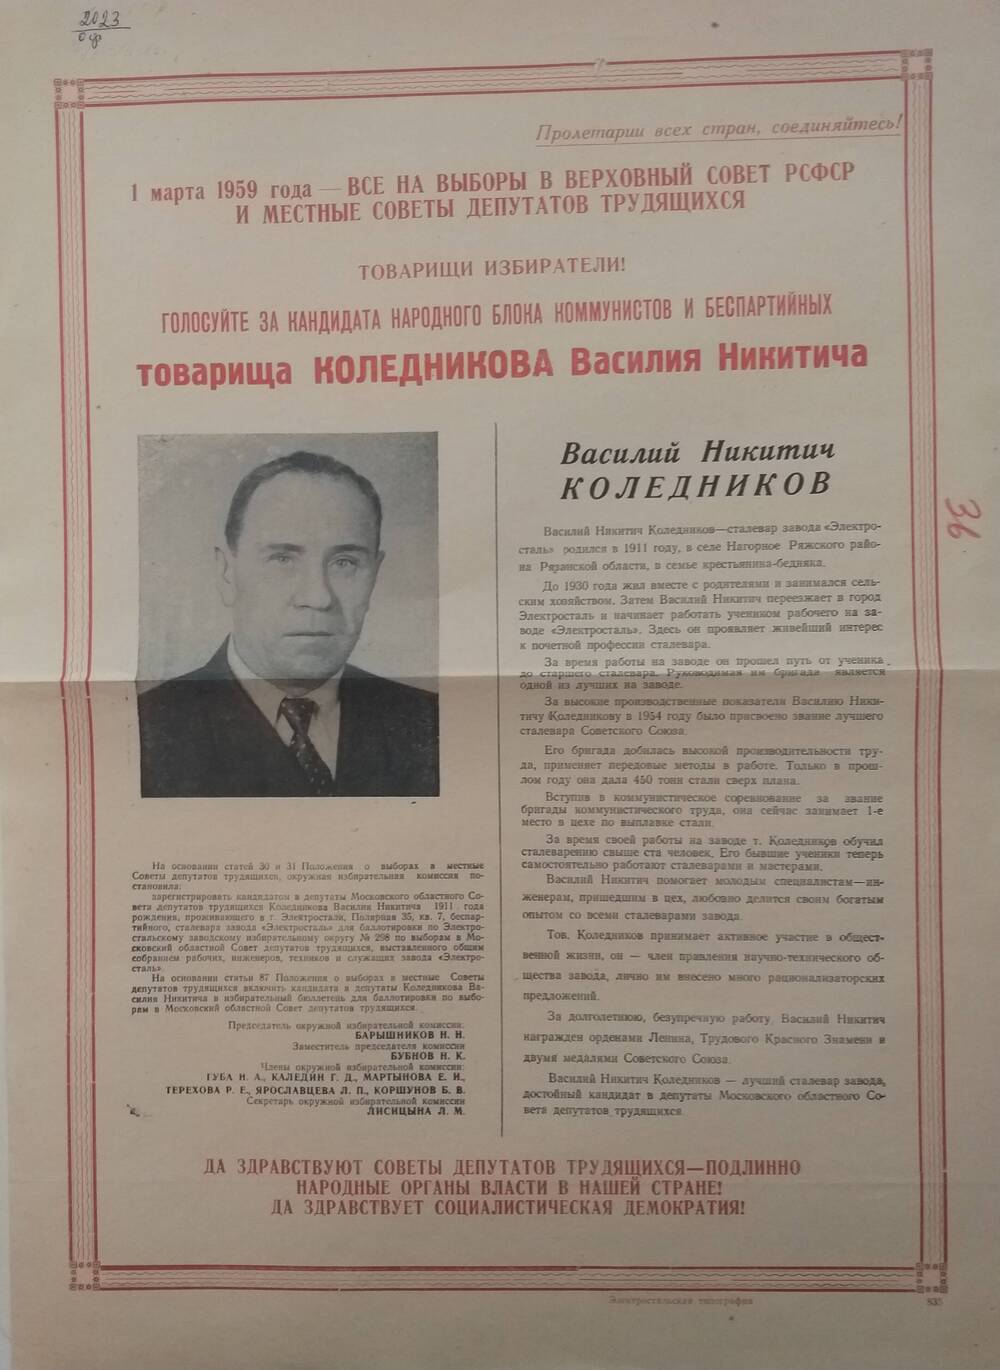 Плакат призыв к голосованию на выборах 1 марта 1959 года Коледникова Василия Никитича - сталевар завода Электросталь, январь 1959 года.